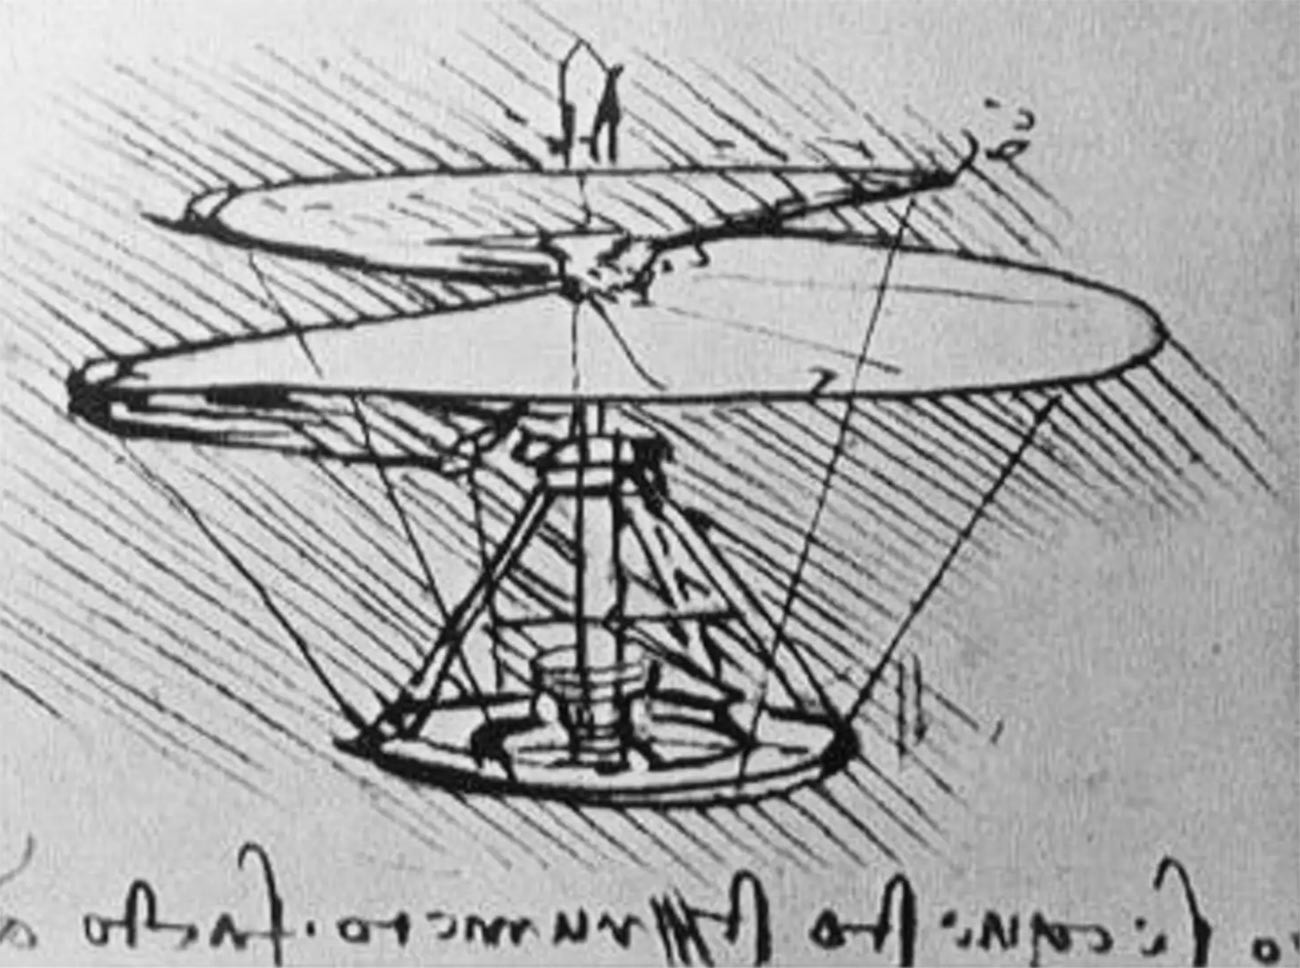 Hubschrauberprototyp von Leonardo da Vinci